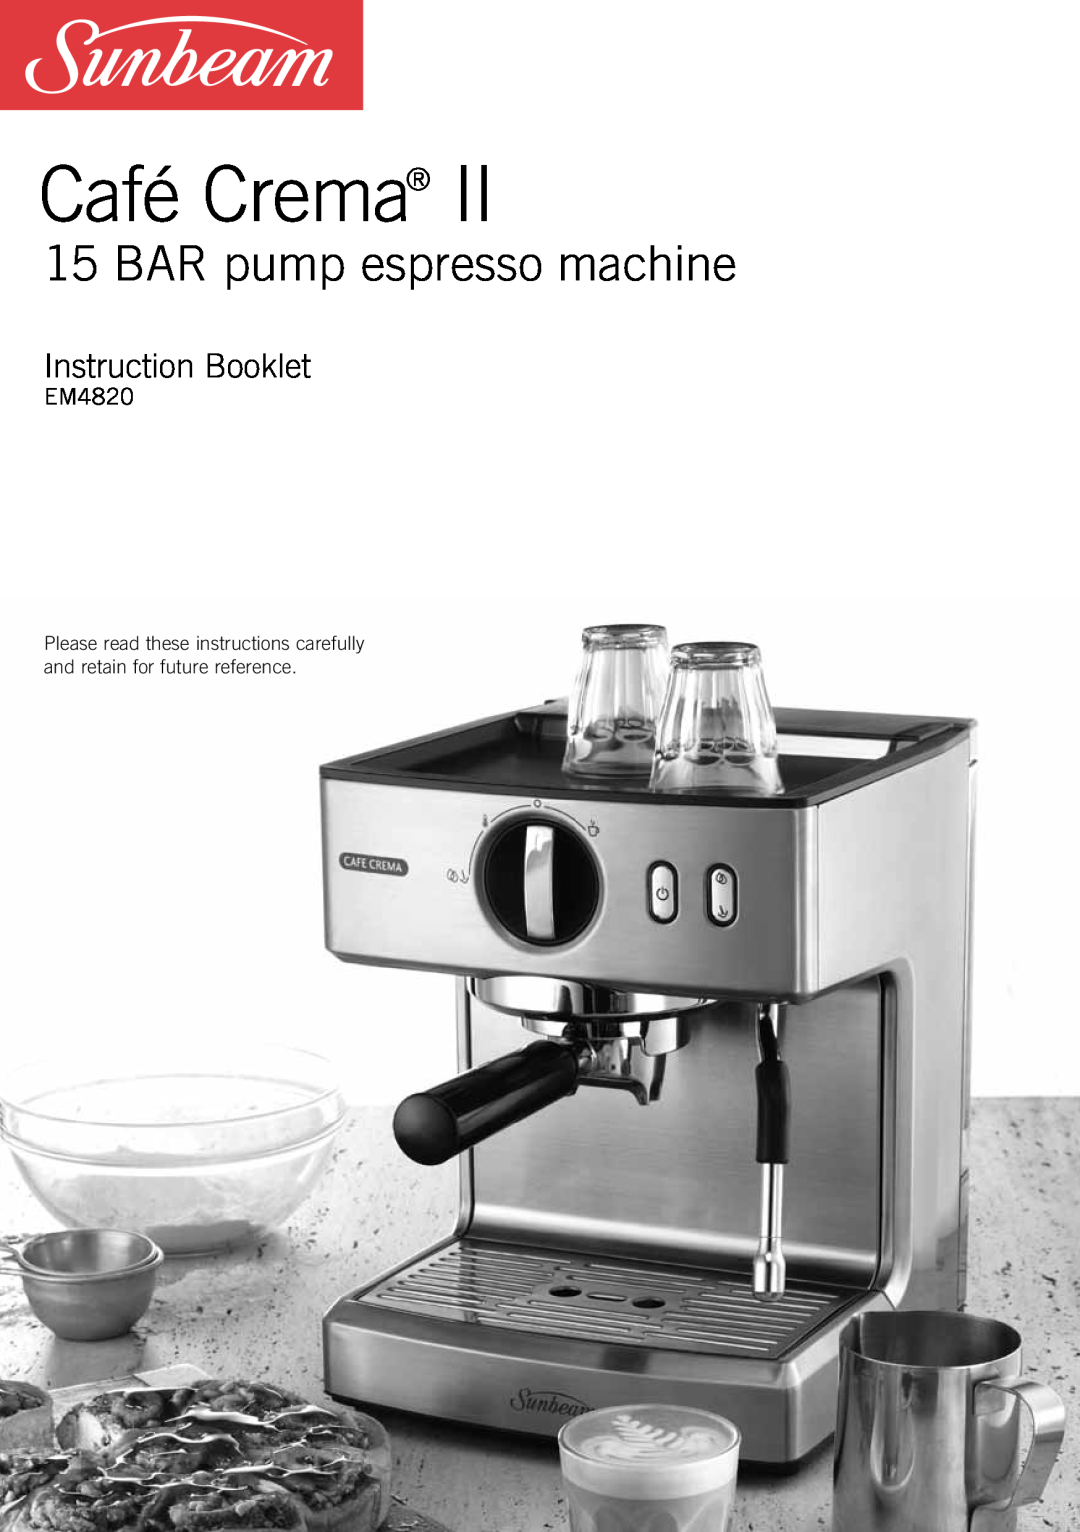 Sunbeam EM4820 manual Café Crema, BAR pump espresso machine, Instruction Booklet 